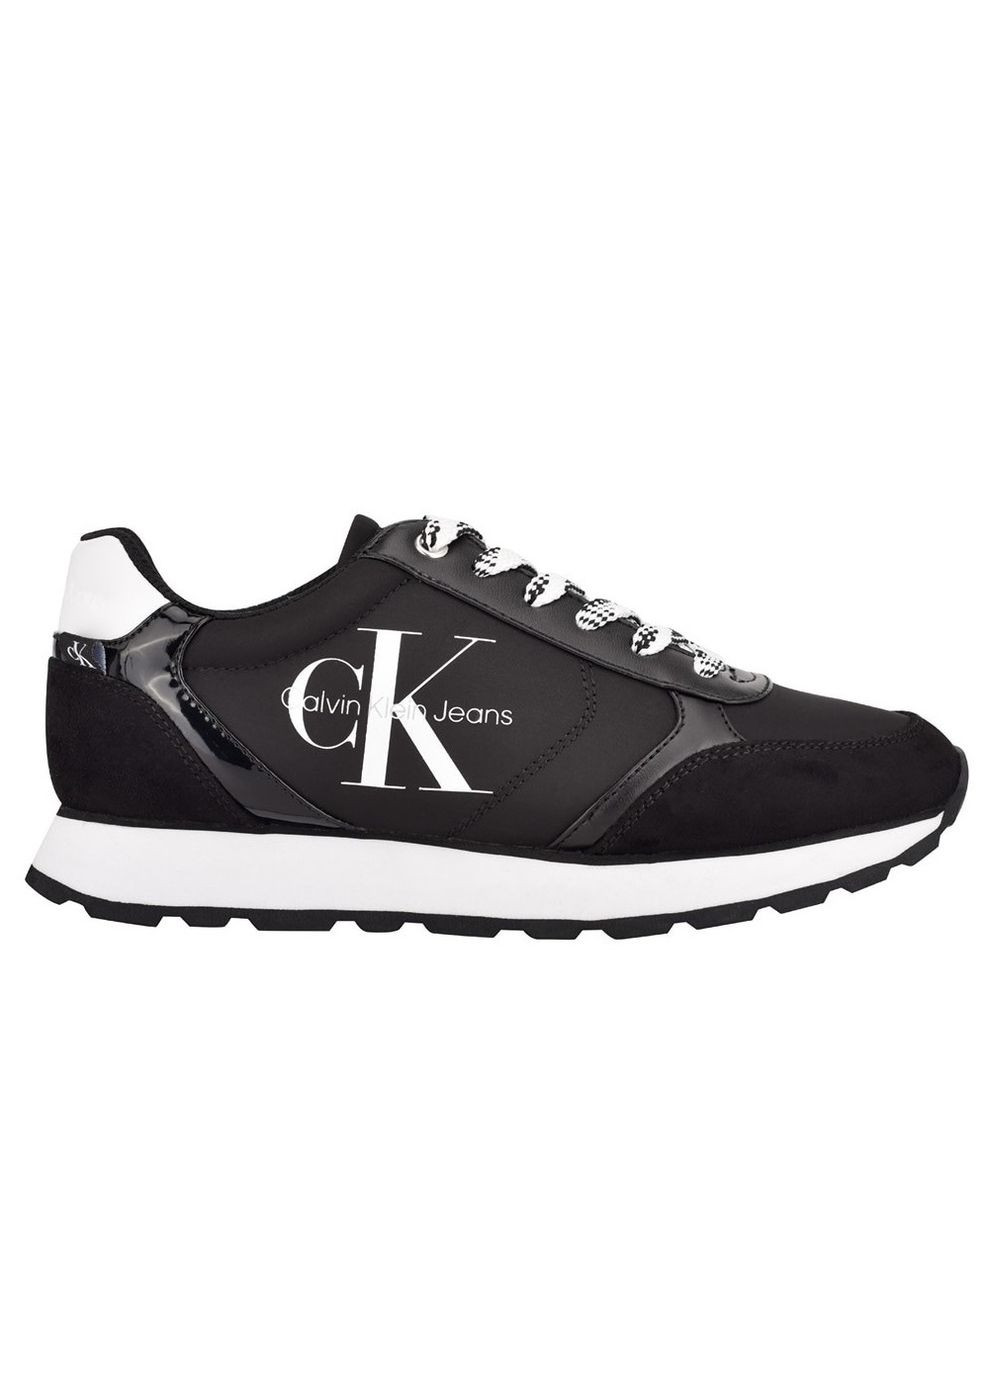 Черные демисезонные женские кроссовки cayle black nylon 7-37-23.8см Calvin Klein